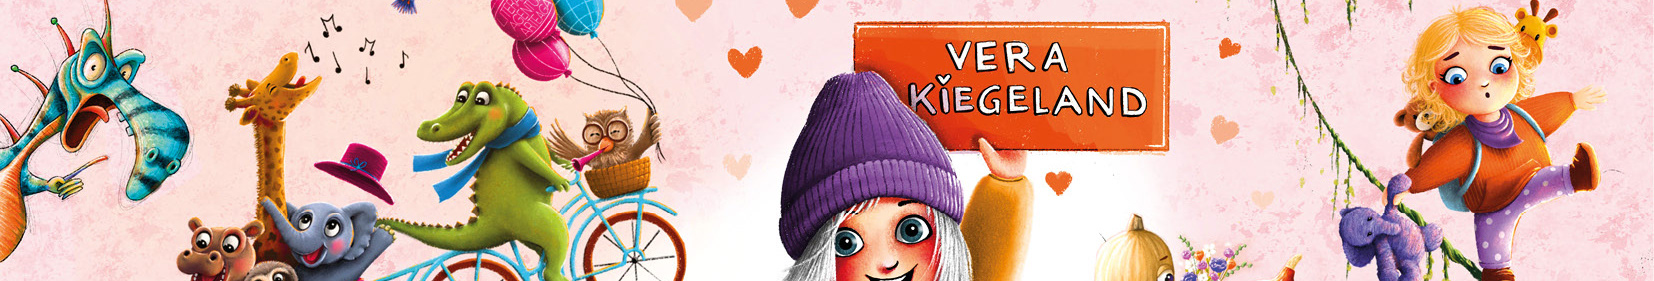 Vera Kiegeland's profile banner